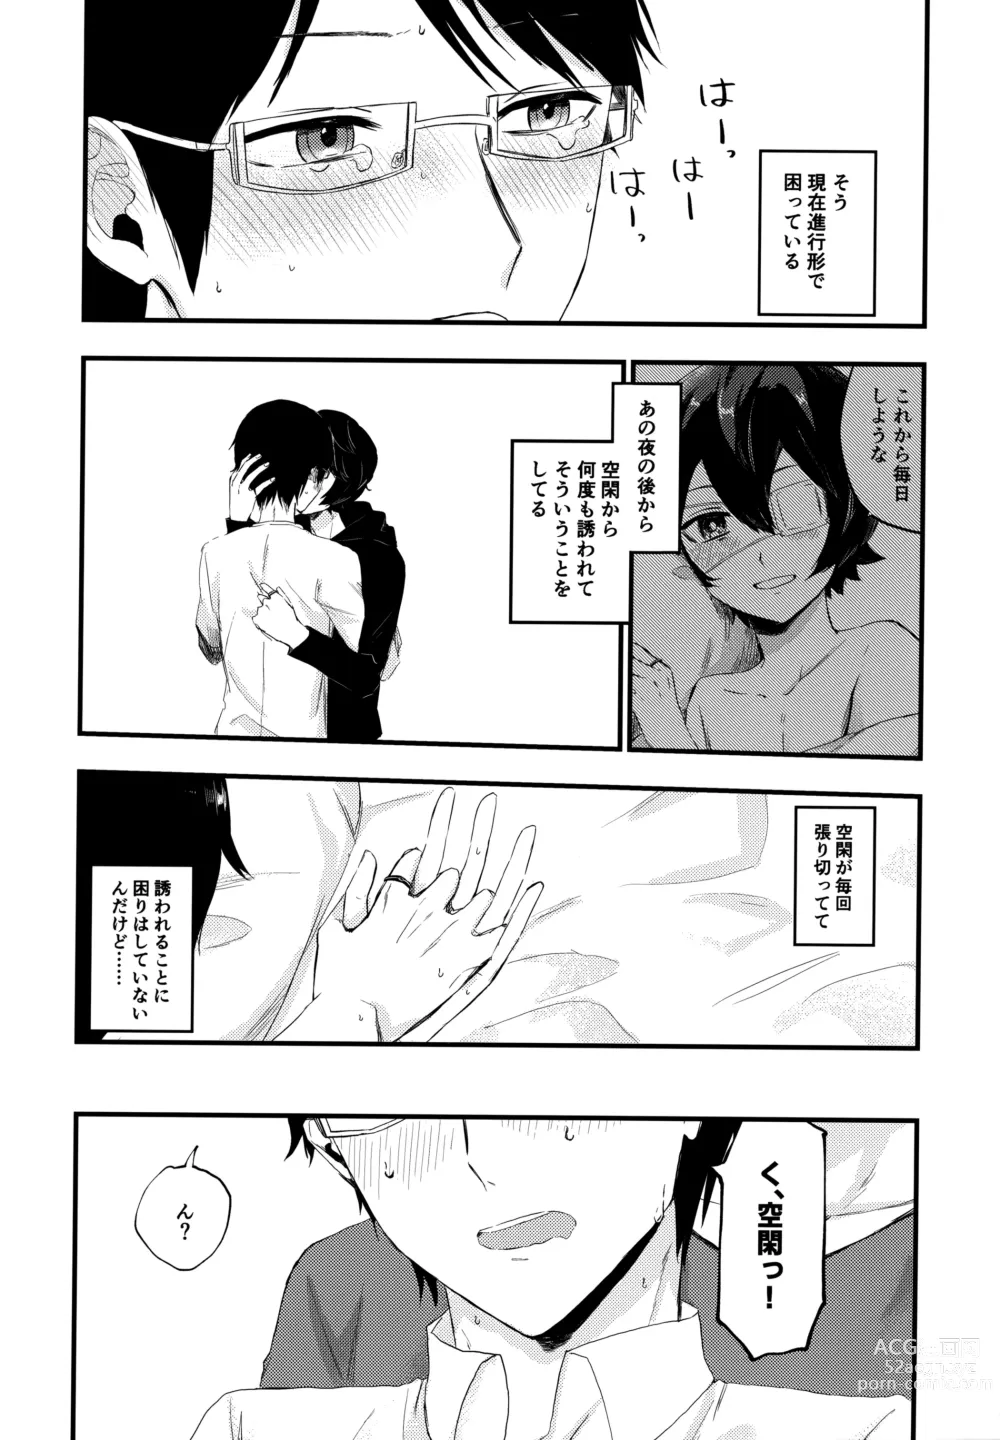 Page 19 of doujinshi Koisuru Retry